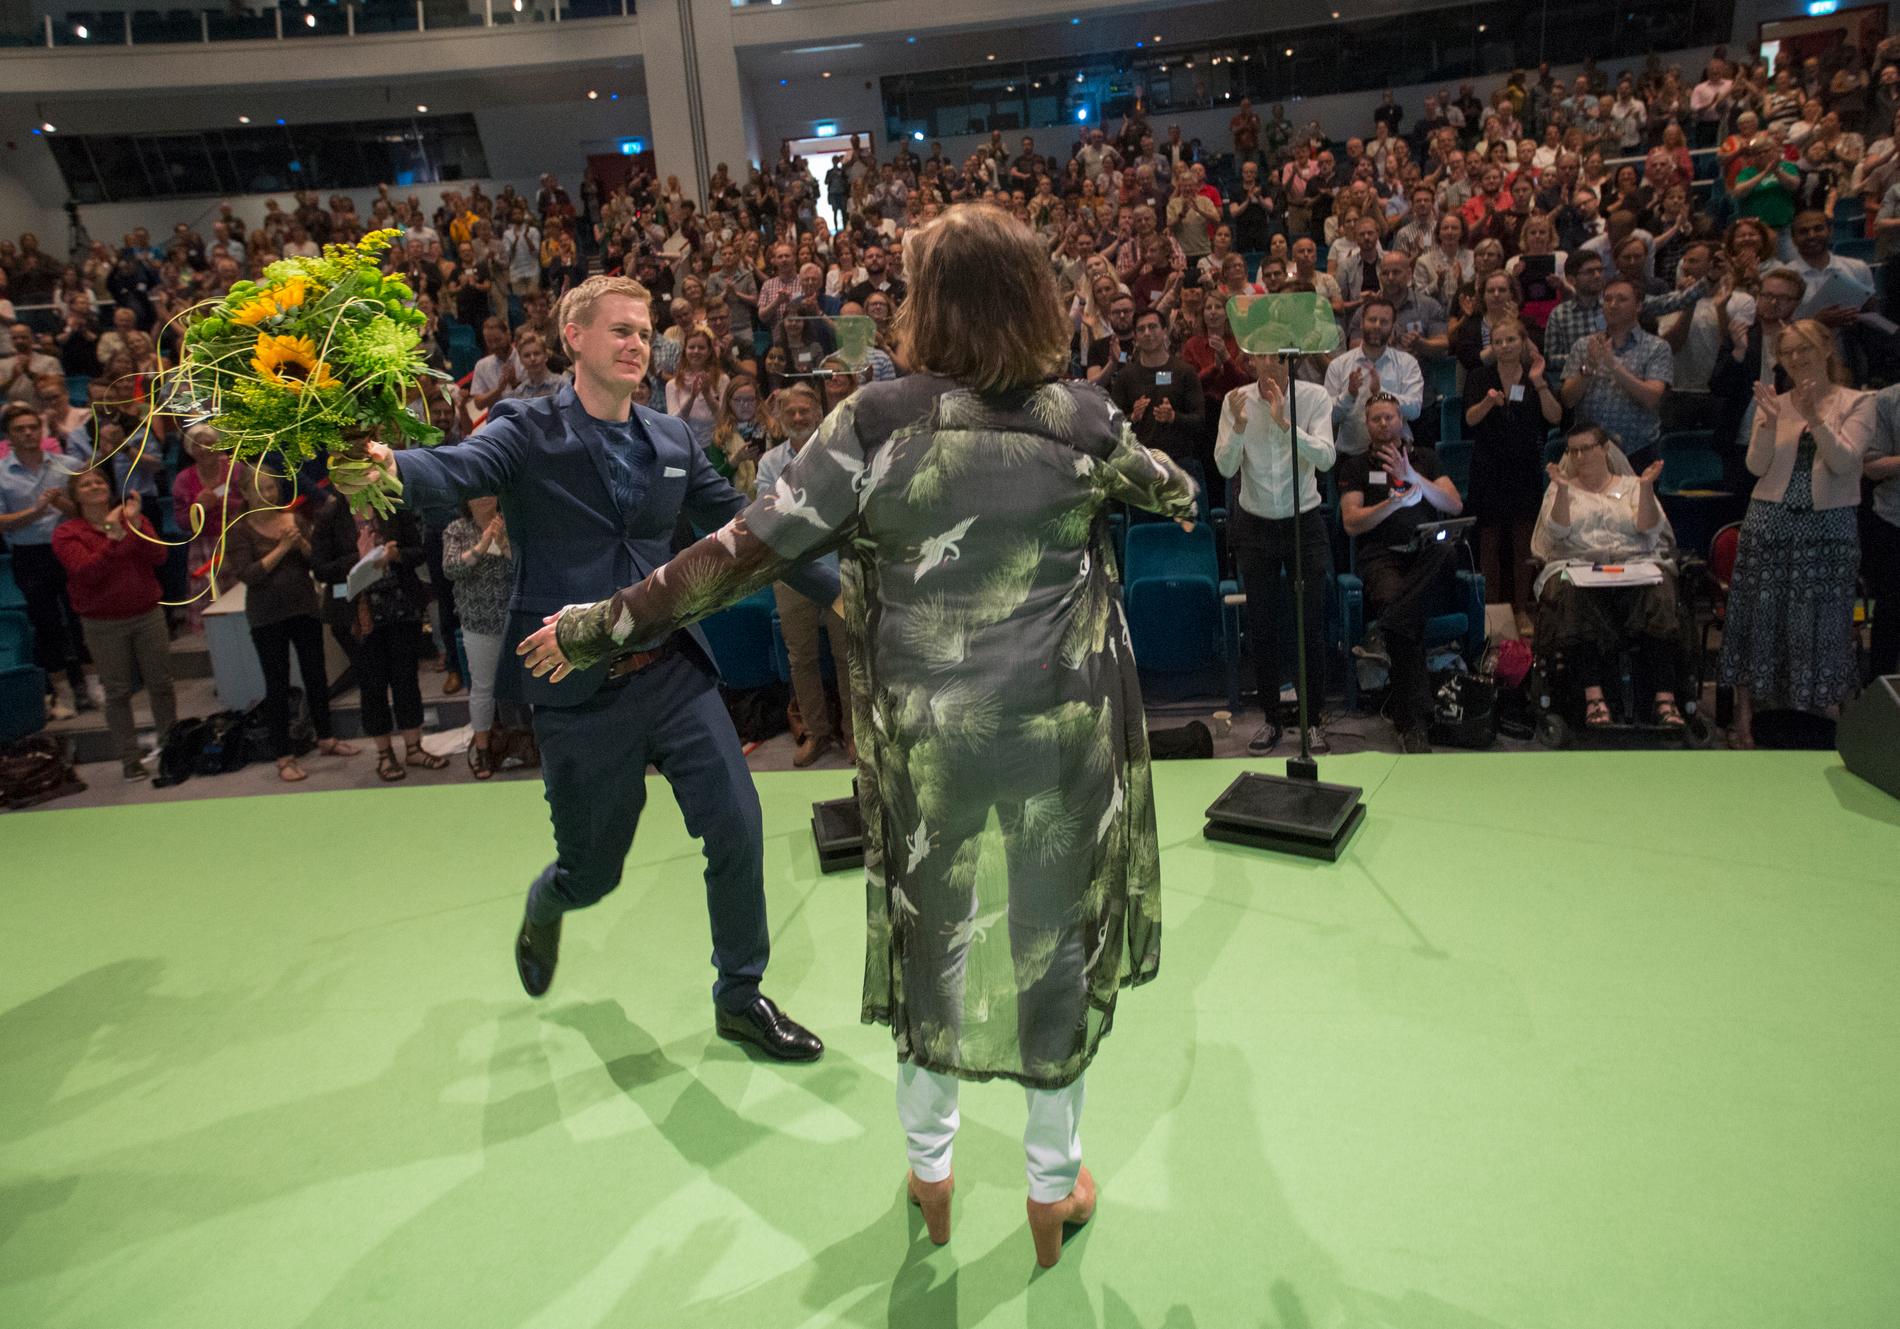 Miljöpartiets språkrör Isabella Lövin blir gratulerad av det andra språkröret Gustav Fridolin i samband med sitt tal under partiets kongress på Aros kongresscenter i Västerås.